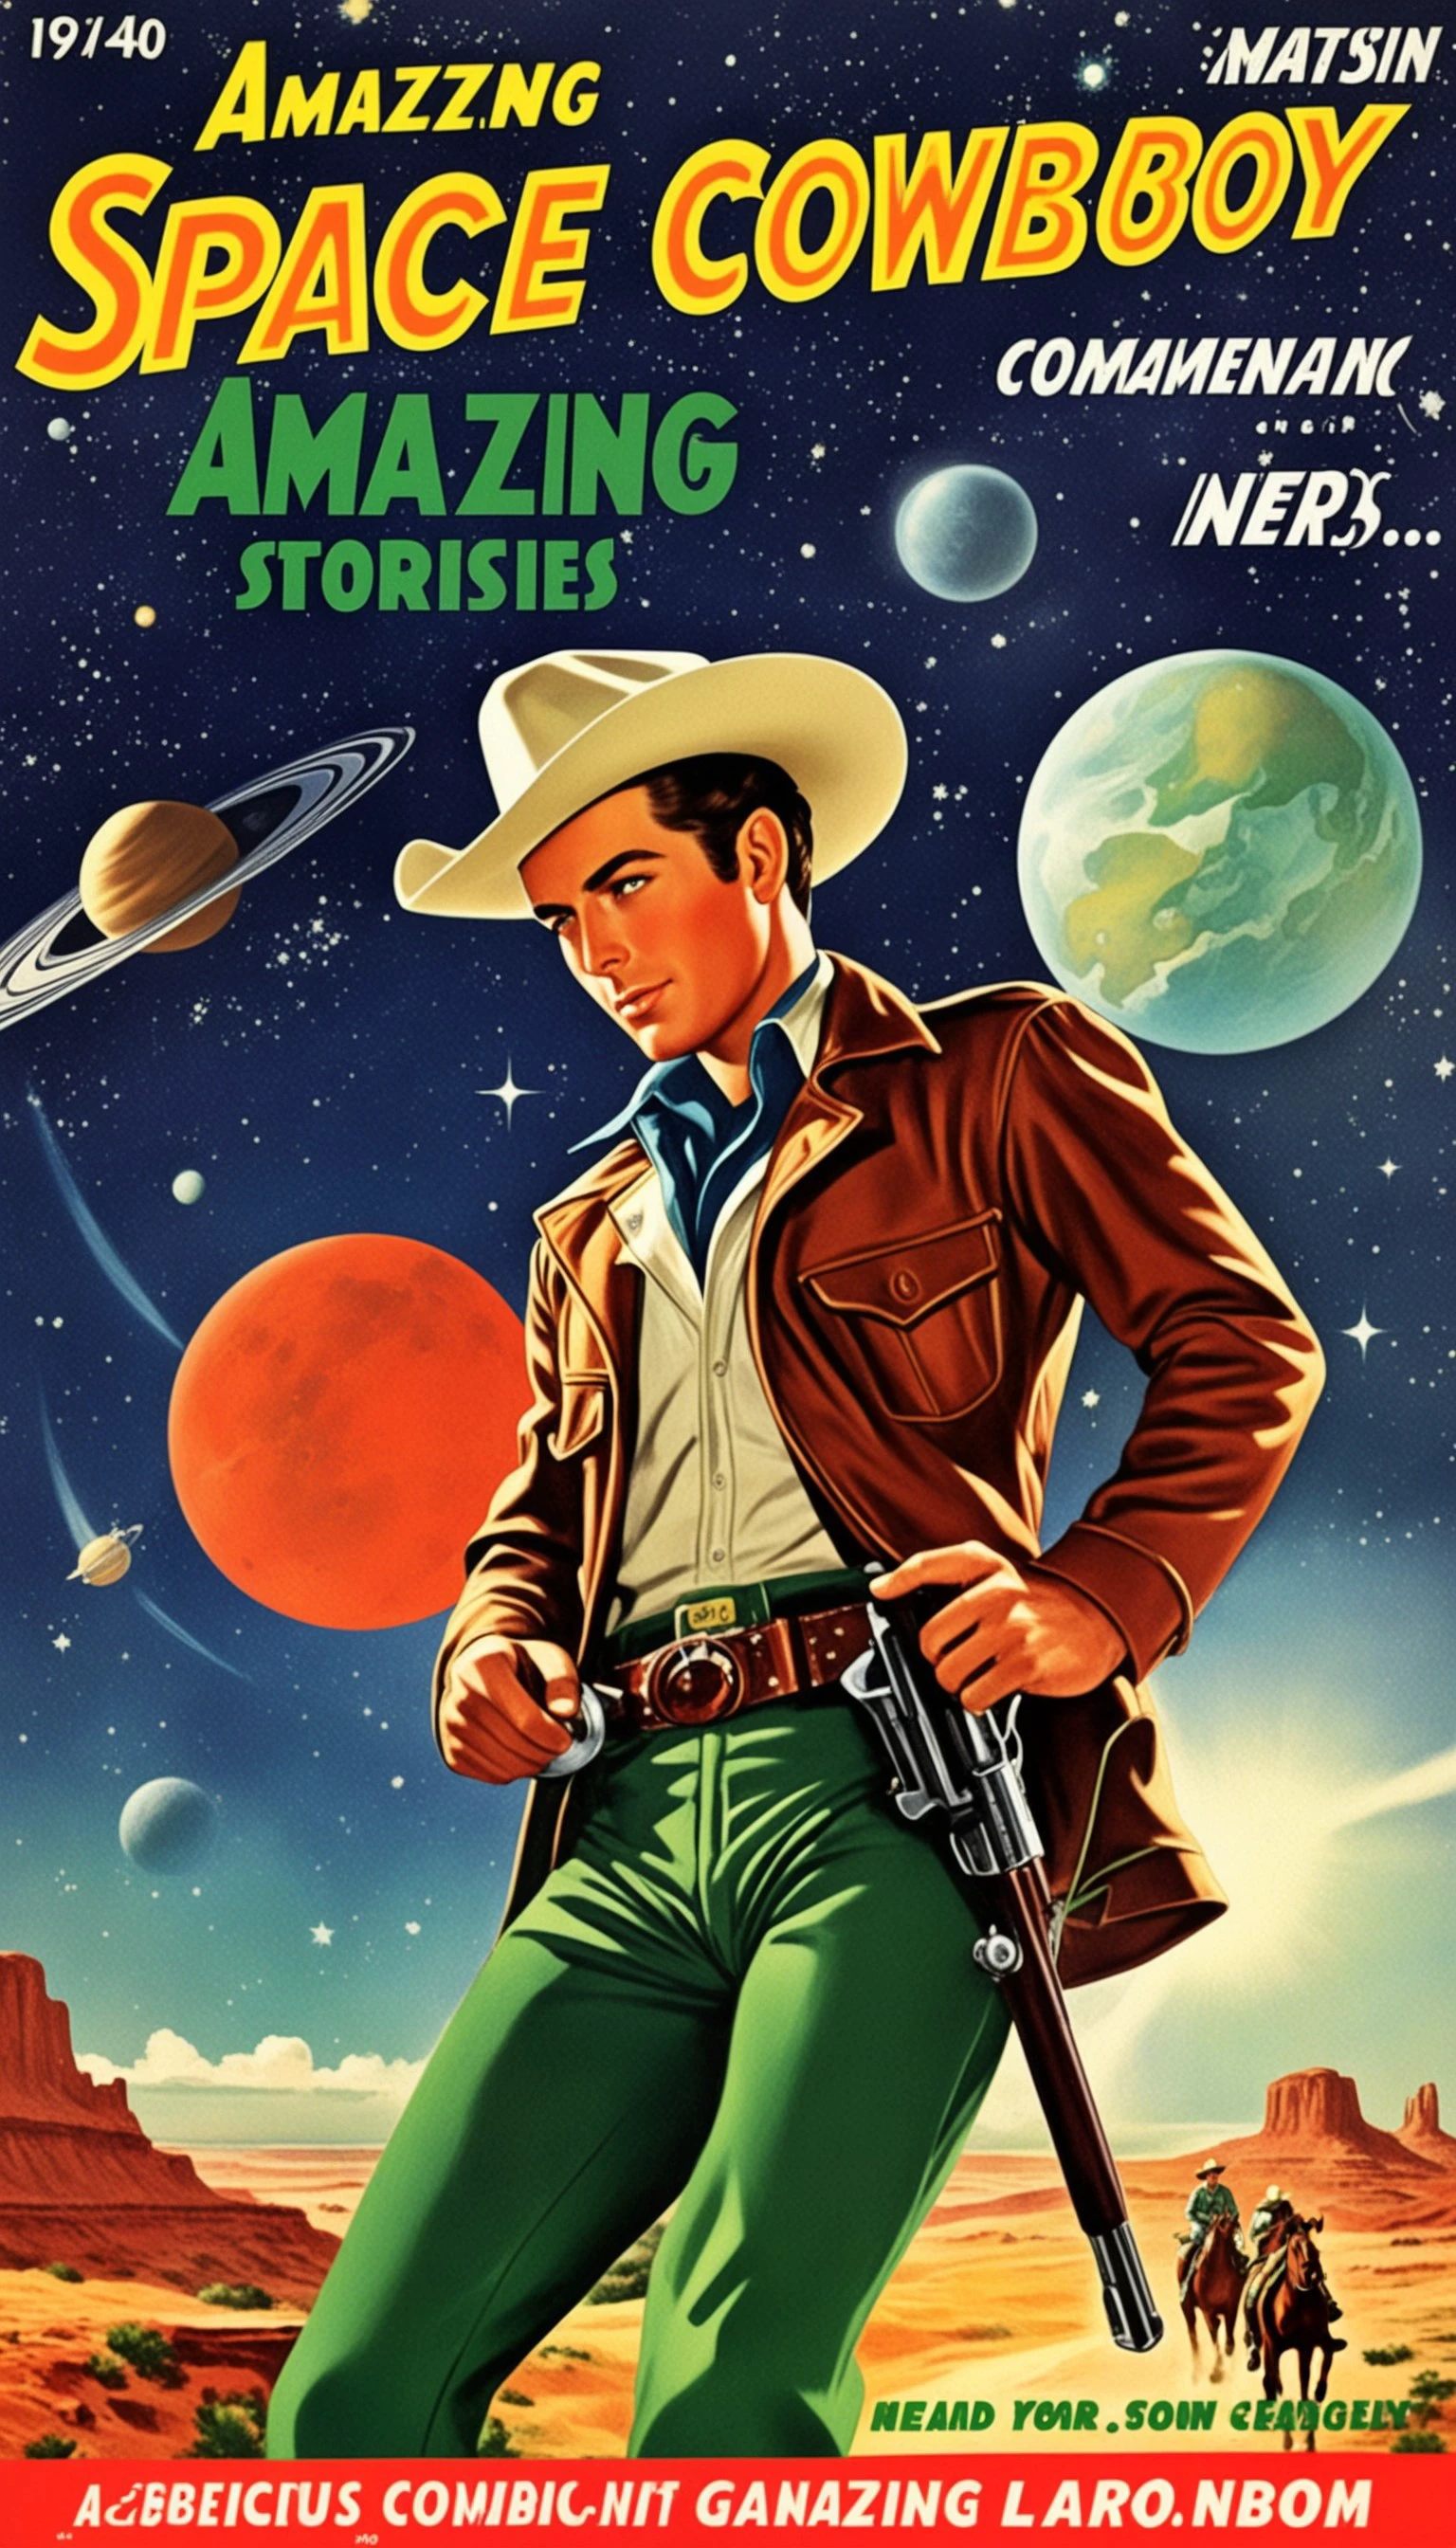 漫畫書的封面, 關於所有太空牛仔的漫畫書封面, 1 戴著帽子的牛仔，風格令人驚嘆的故事, 20 世紀 40 年代 19 50 年代, 紅色和綠色, 漫畫藝術, 現實題材場景, 浪漫化寫實動態